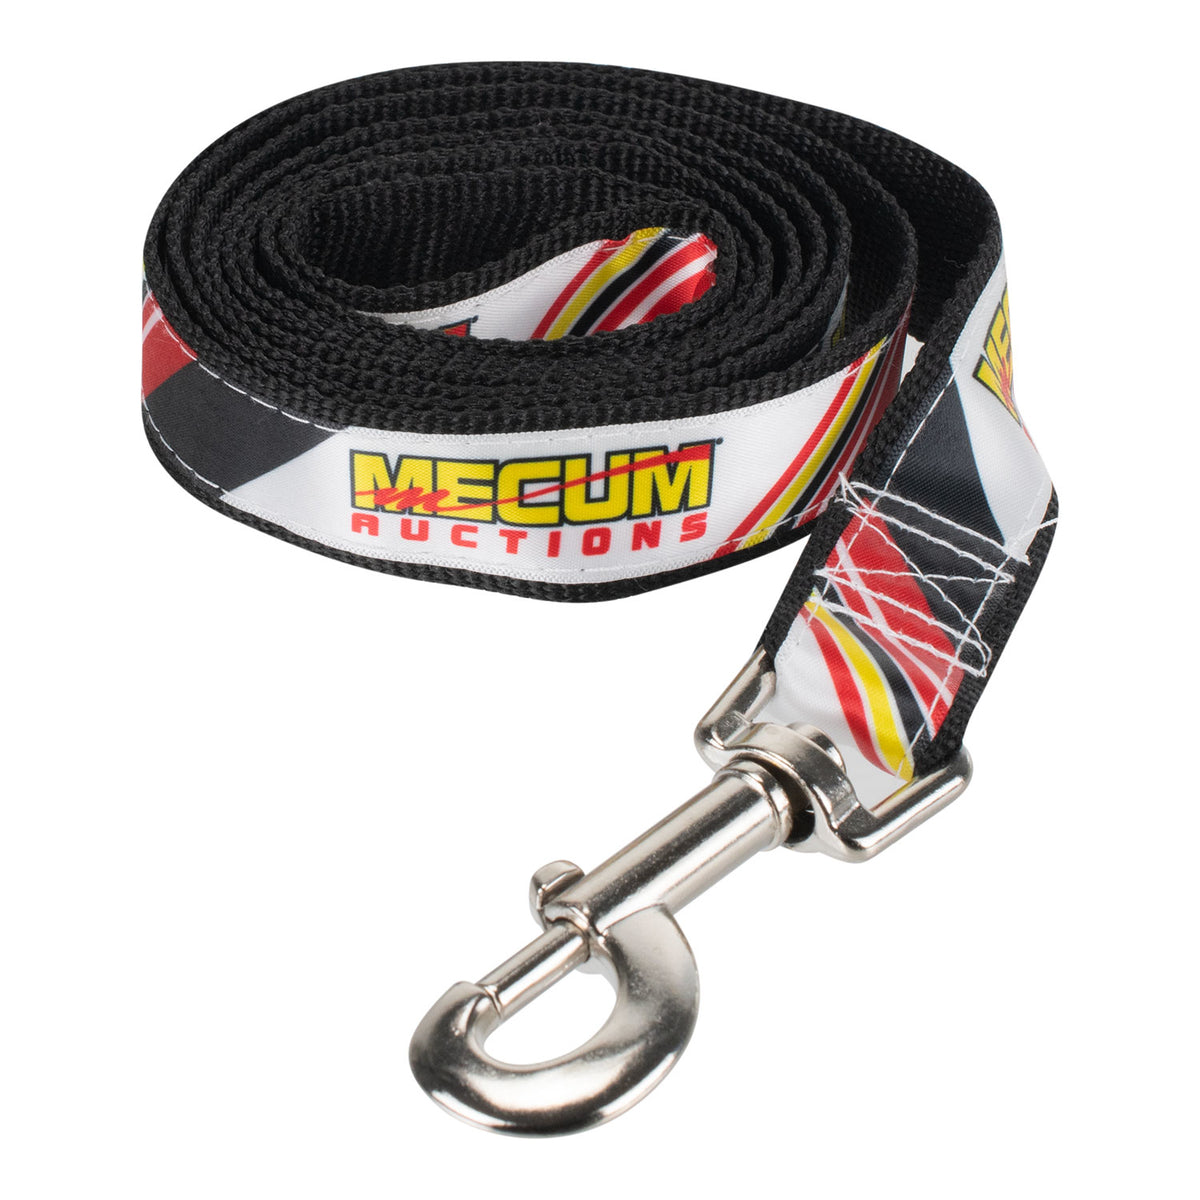 Mecum Auctions Dog Leash - Front View